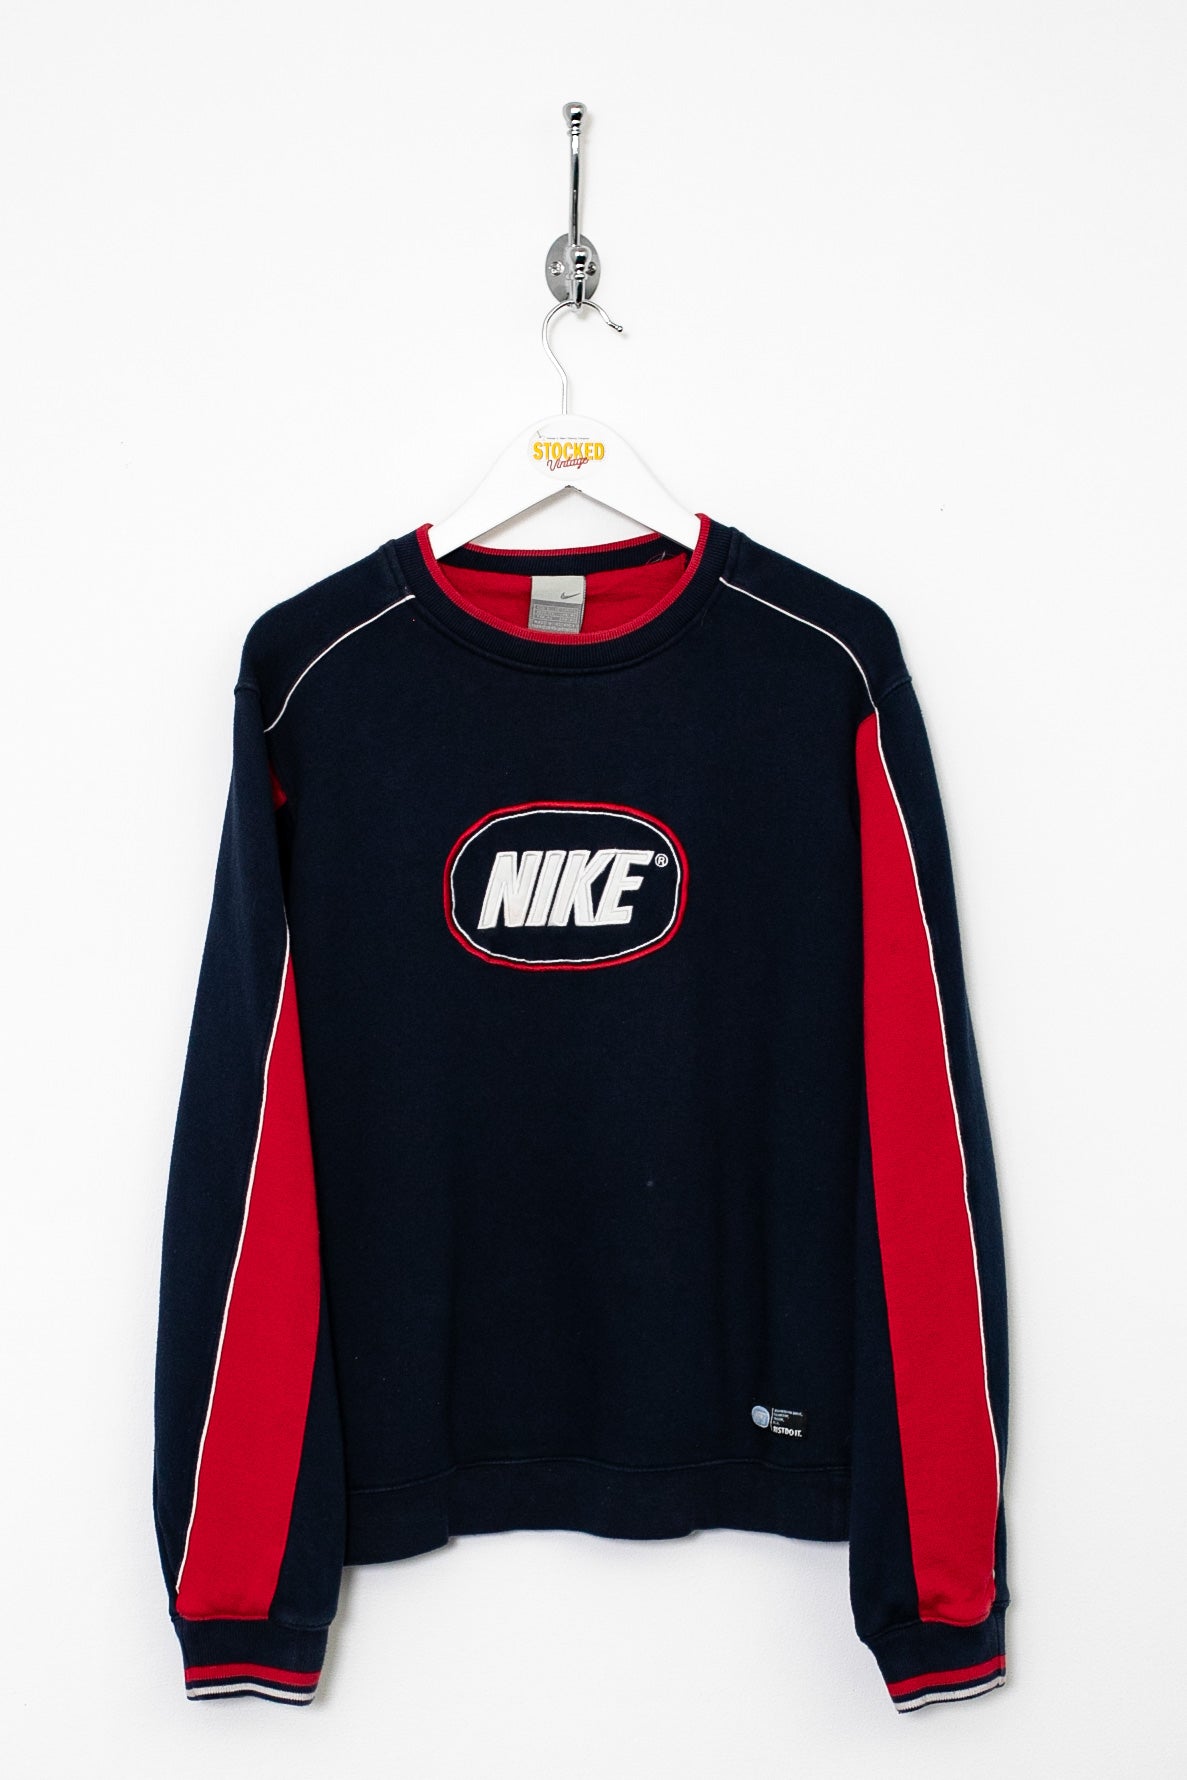 Womens 00s Nike Sweatshirt (M)